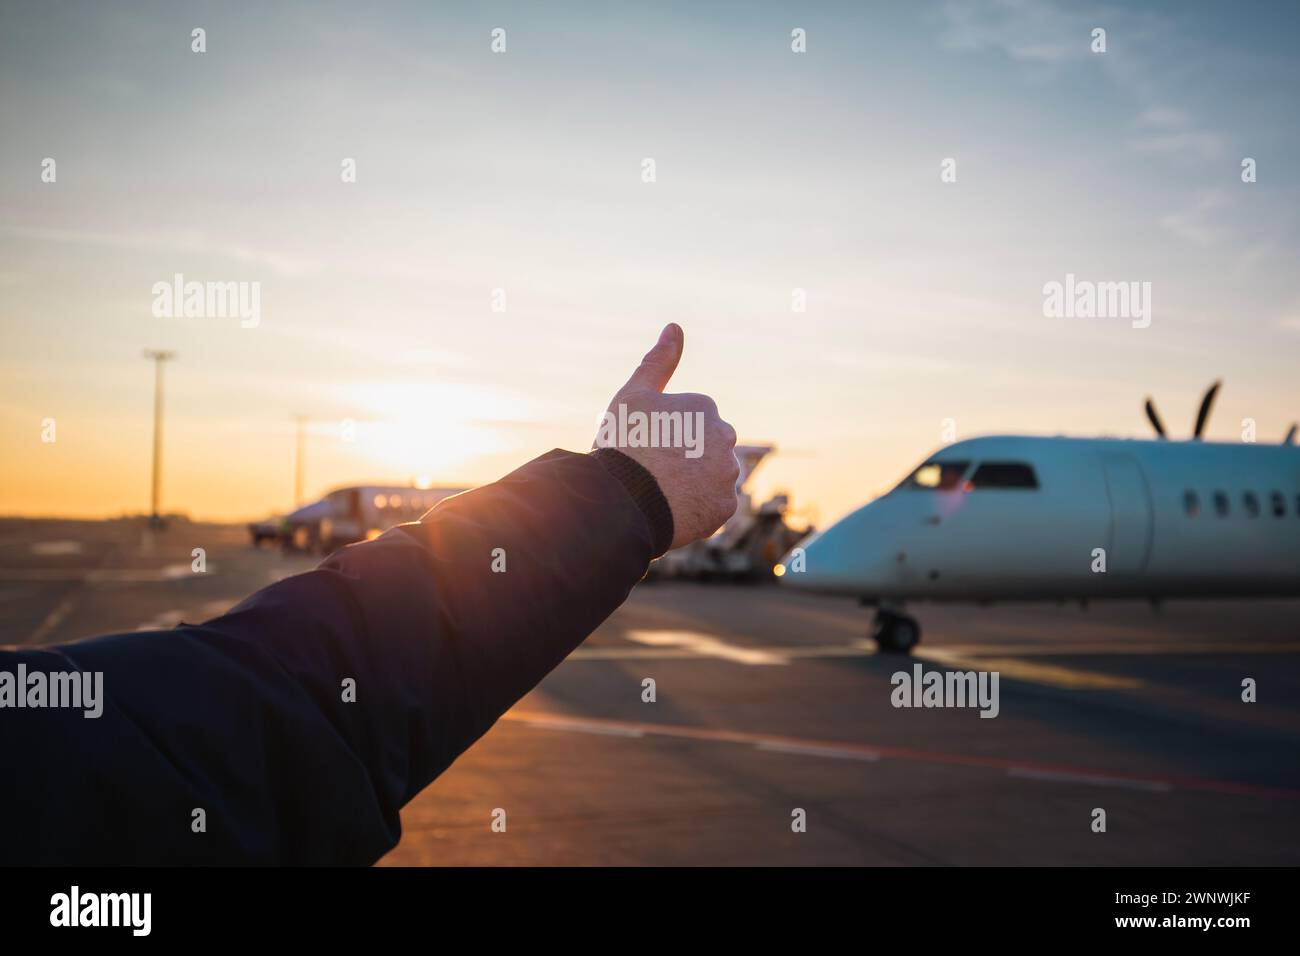 Mitglied der Bodencrew zeigt die Daumen nach oben zum Flugzeug. Verkehr am Flughafen bei Sonnenuntergang. Stockfoto